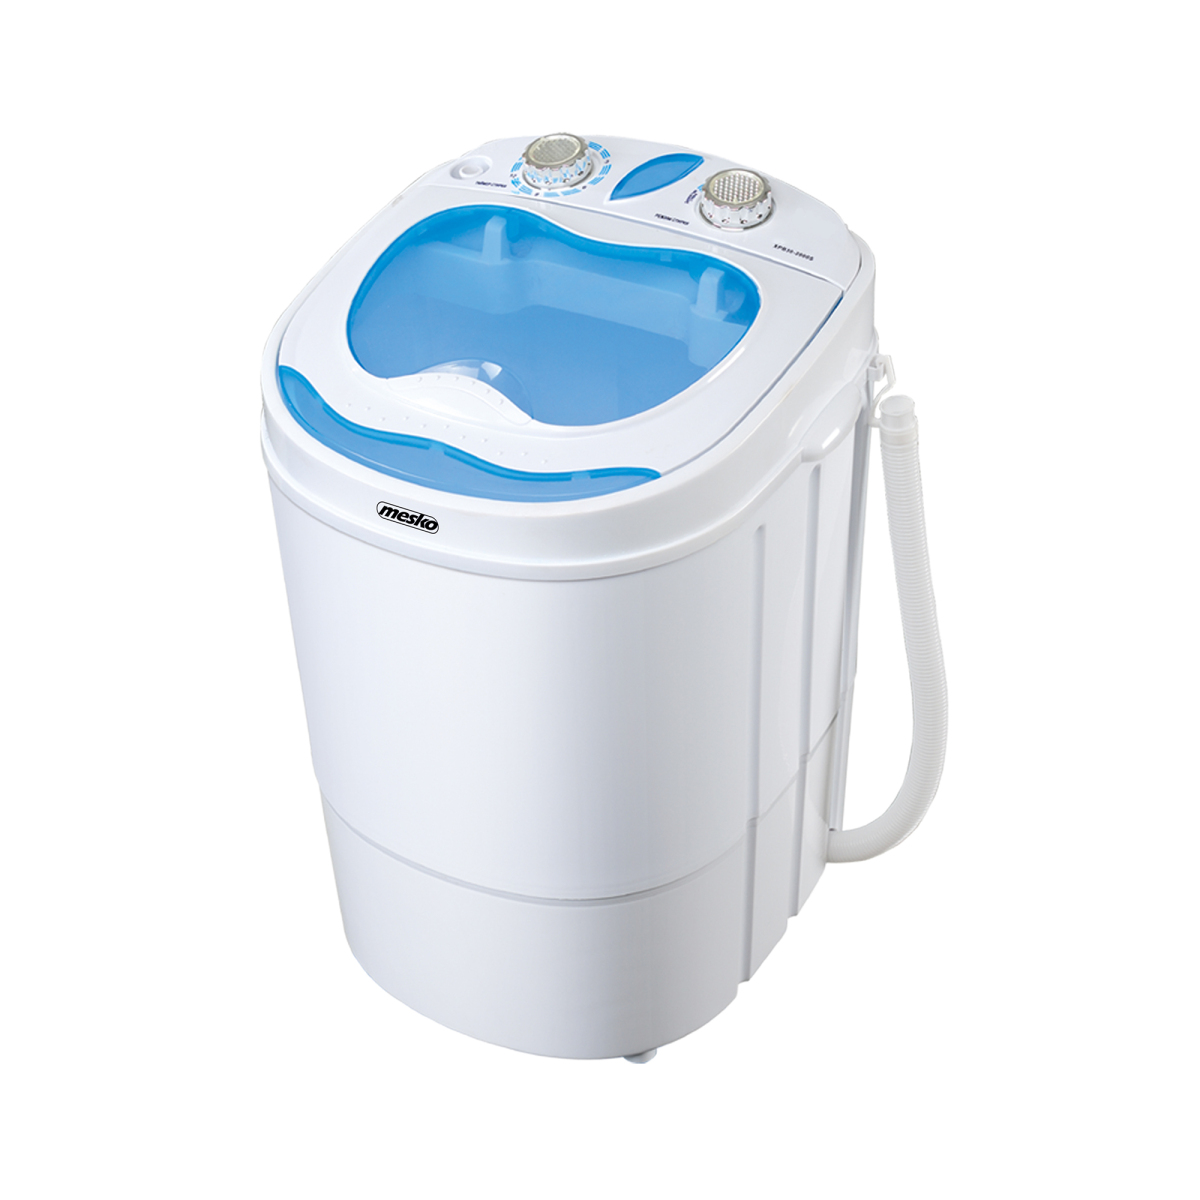 Mini machine à laver manuelle, non électrique, portable, compacte,  alimentée à la main, laveuse et essoreuse, lave-linge à manivelle pour  dortoirs